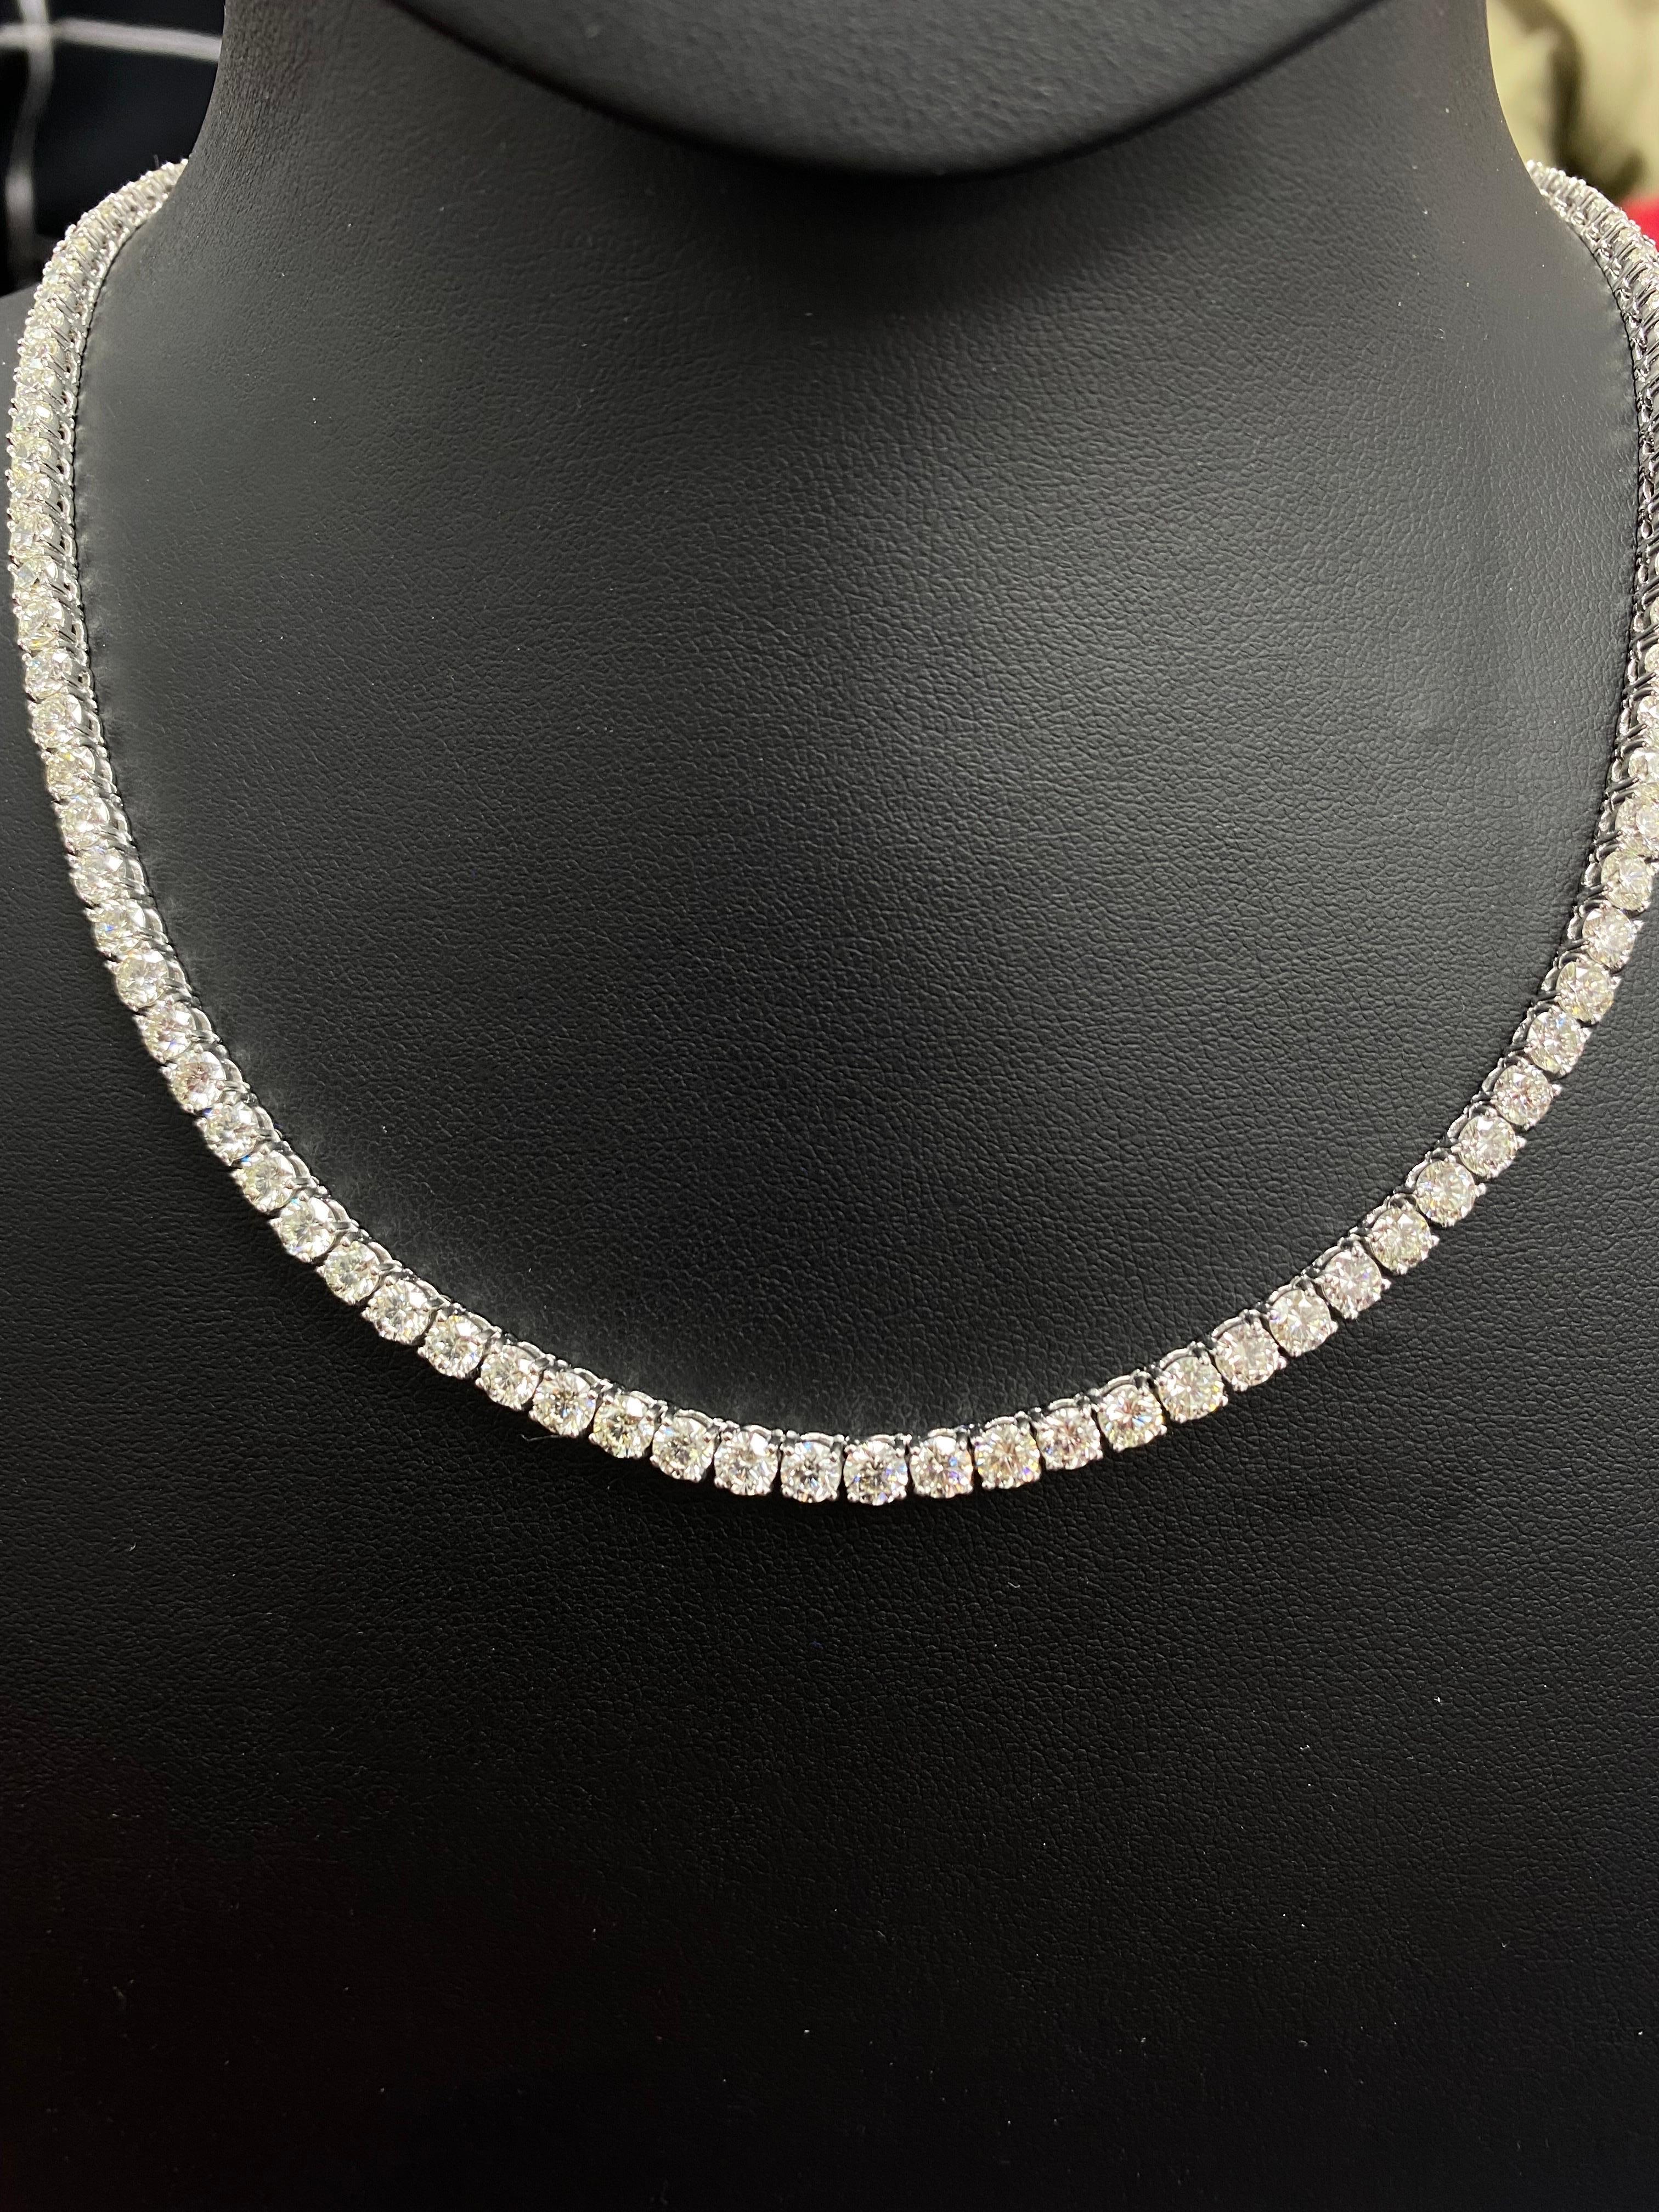 Diese Diamant-Tennis-Halskette zeichnet sich durch wunderschön geschliffene runde Diamanten aus, die in massivem 18-karätigem Weißgold gefasst sind. Individuelle Anpassung möglich - für Tennisketten und Armbänder. Für weitere Informationen können